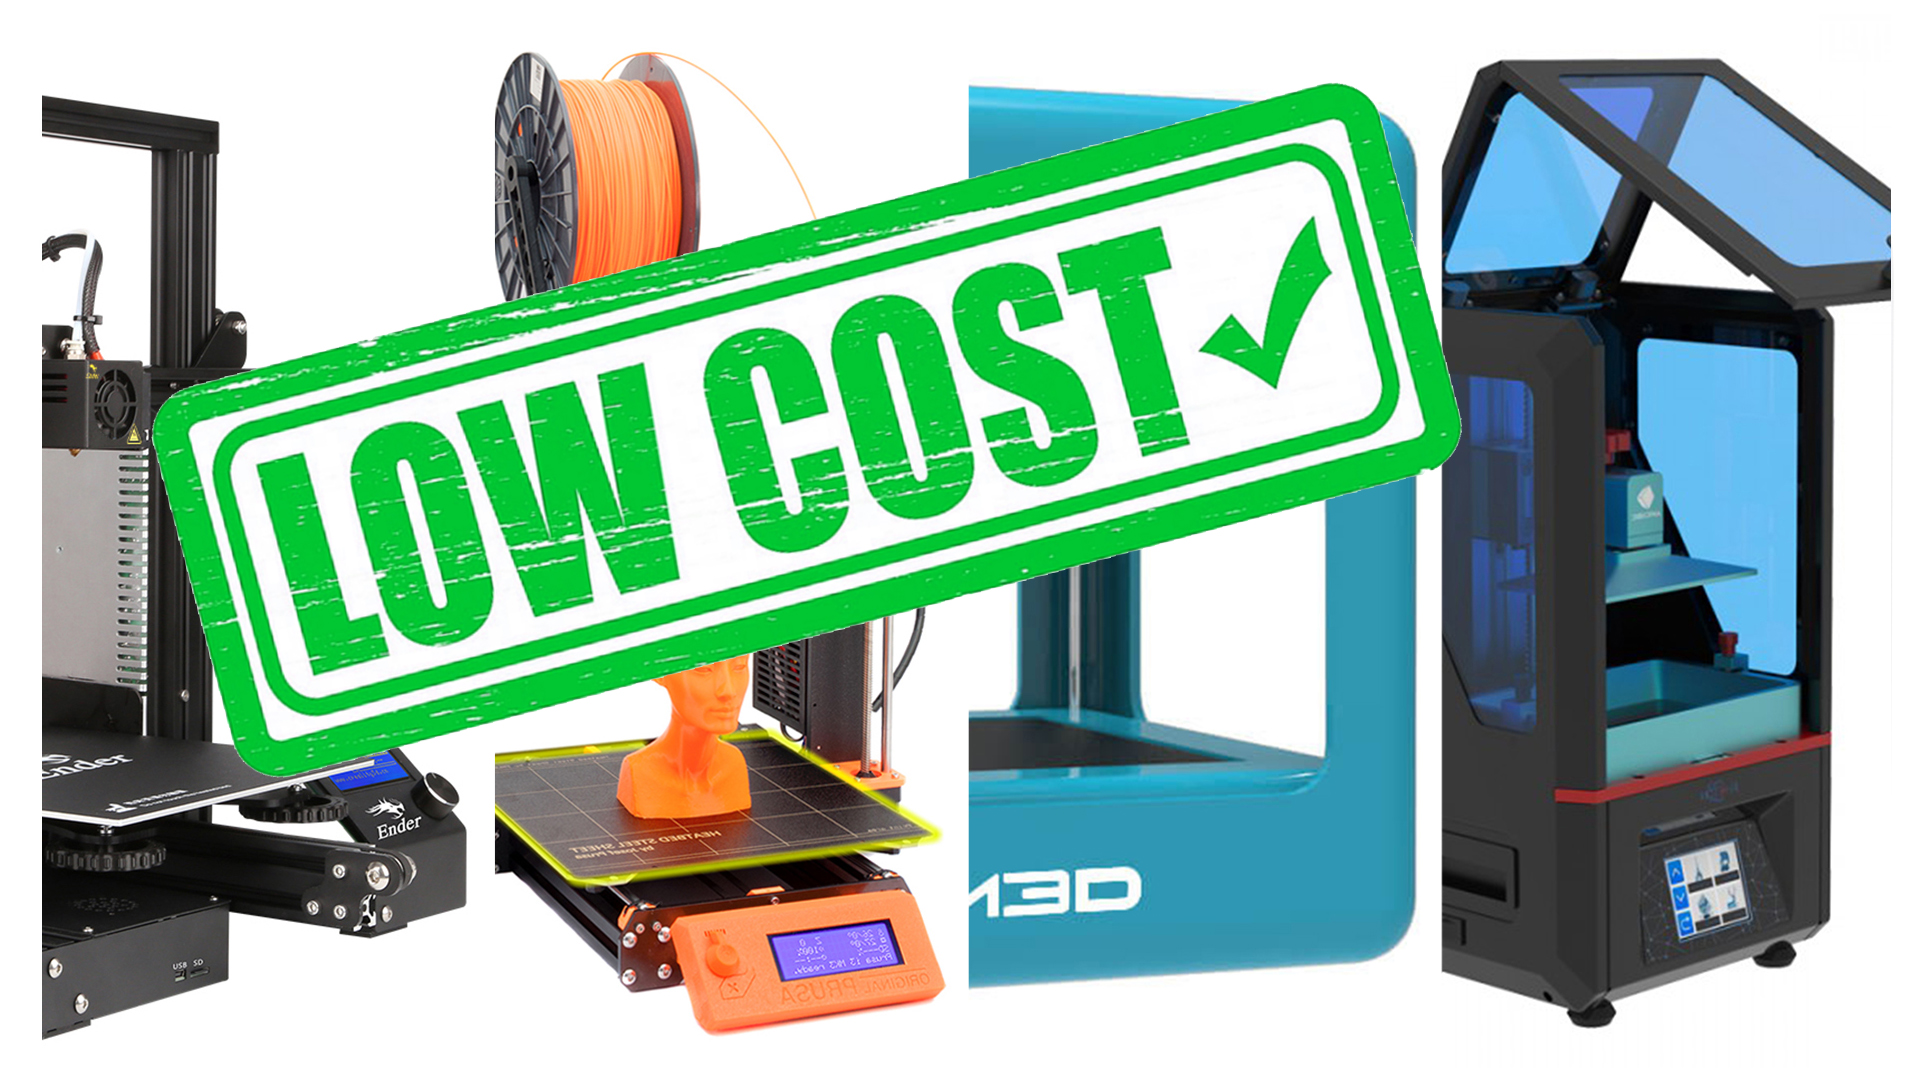 Maggiori informazioni su "Le migliori stampanti 3D economiche del 2018"